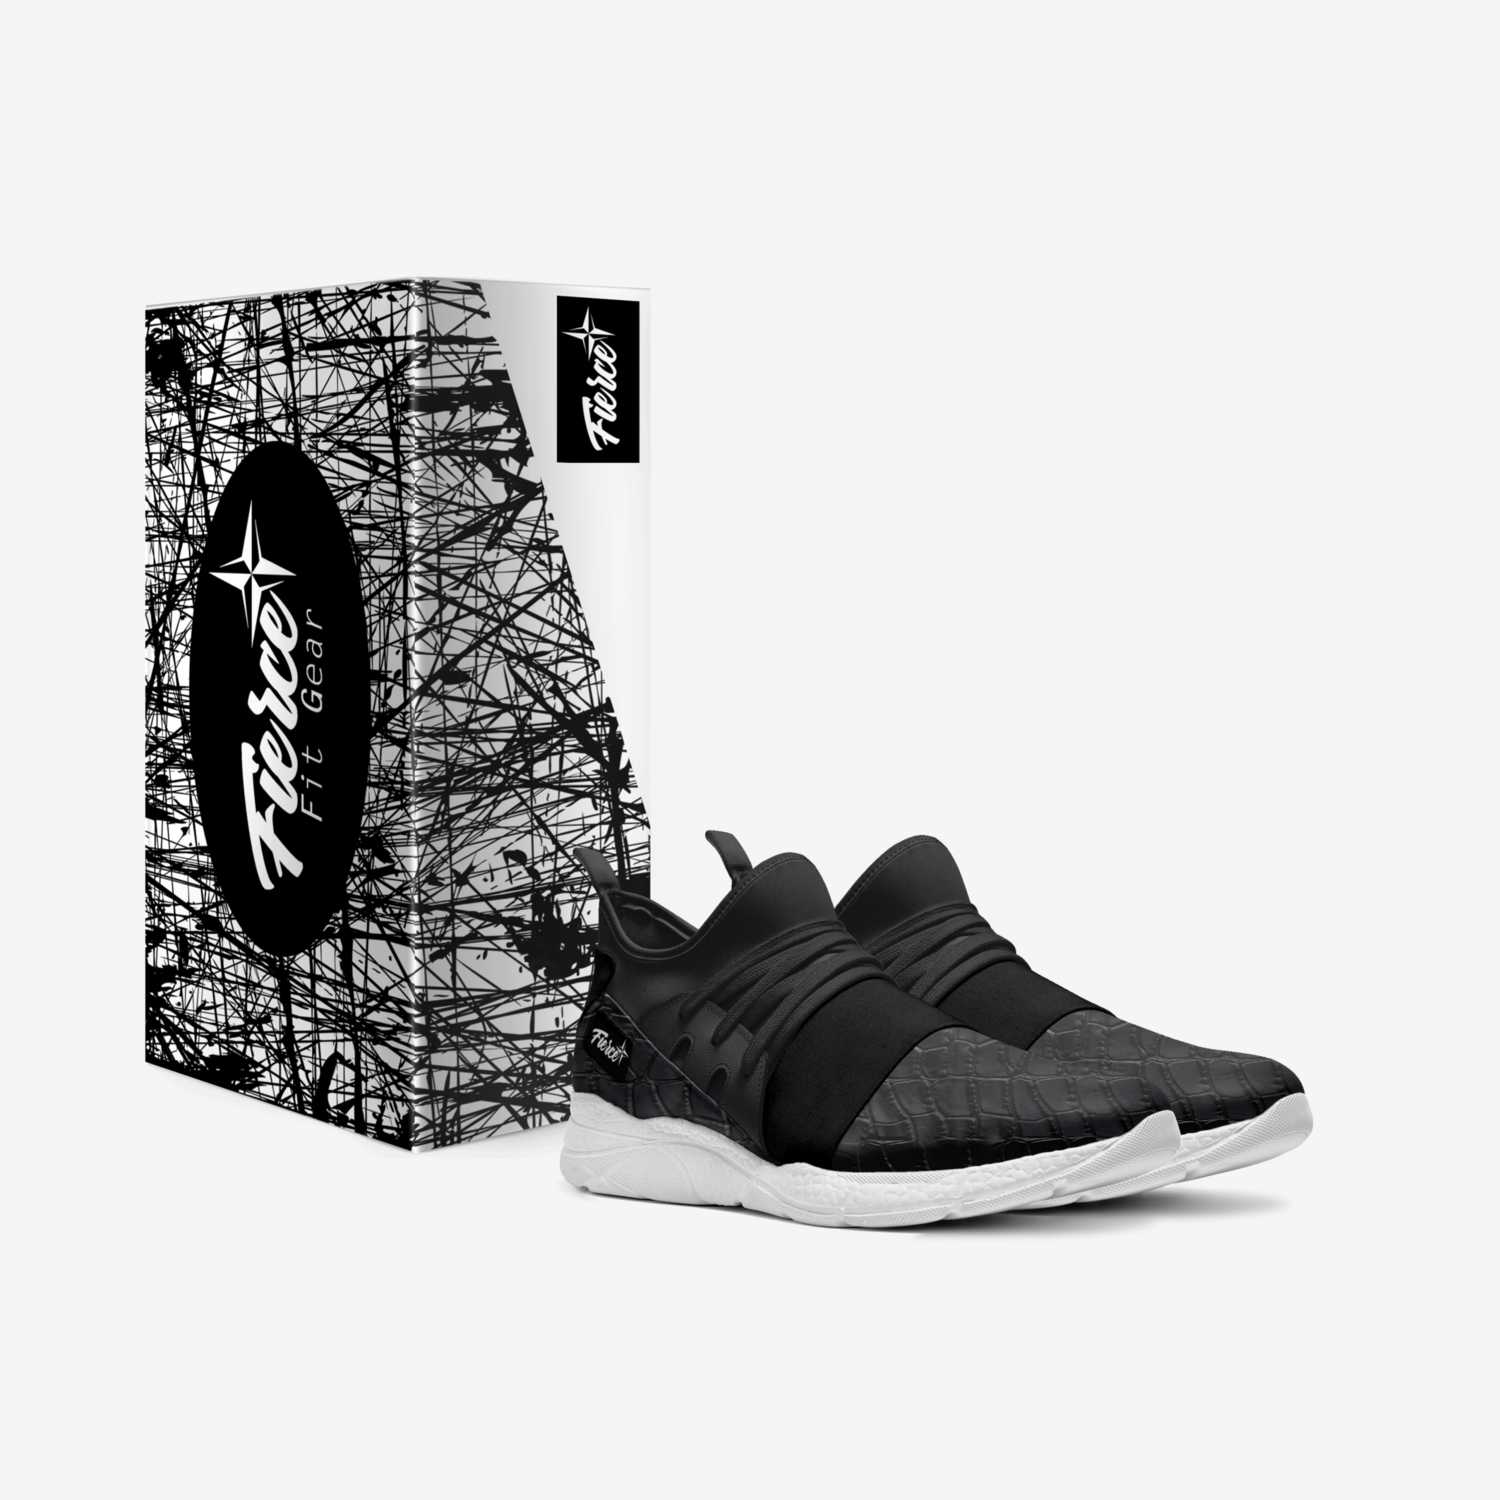  Fierce Core Kicks custom made in Italy shoes by Fierce Fit Gear | Box view